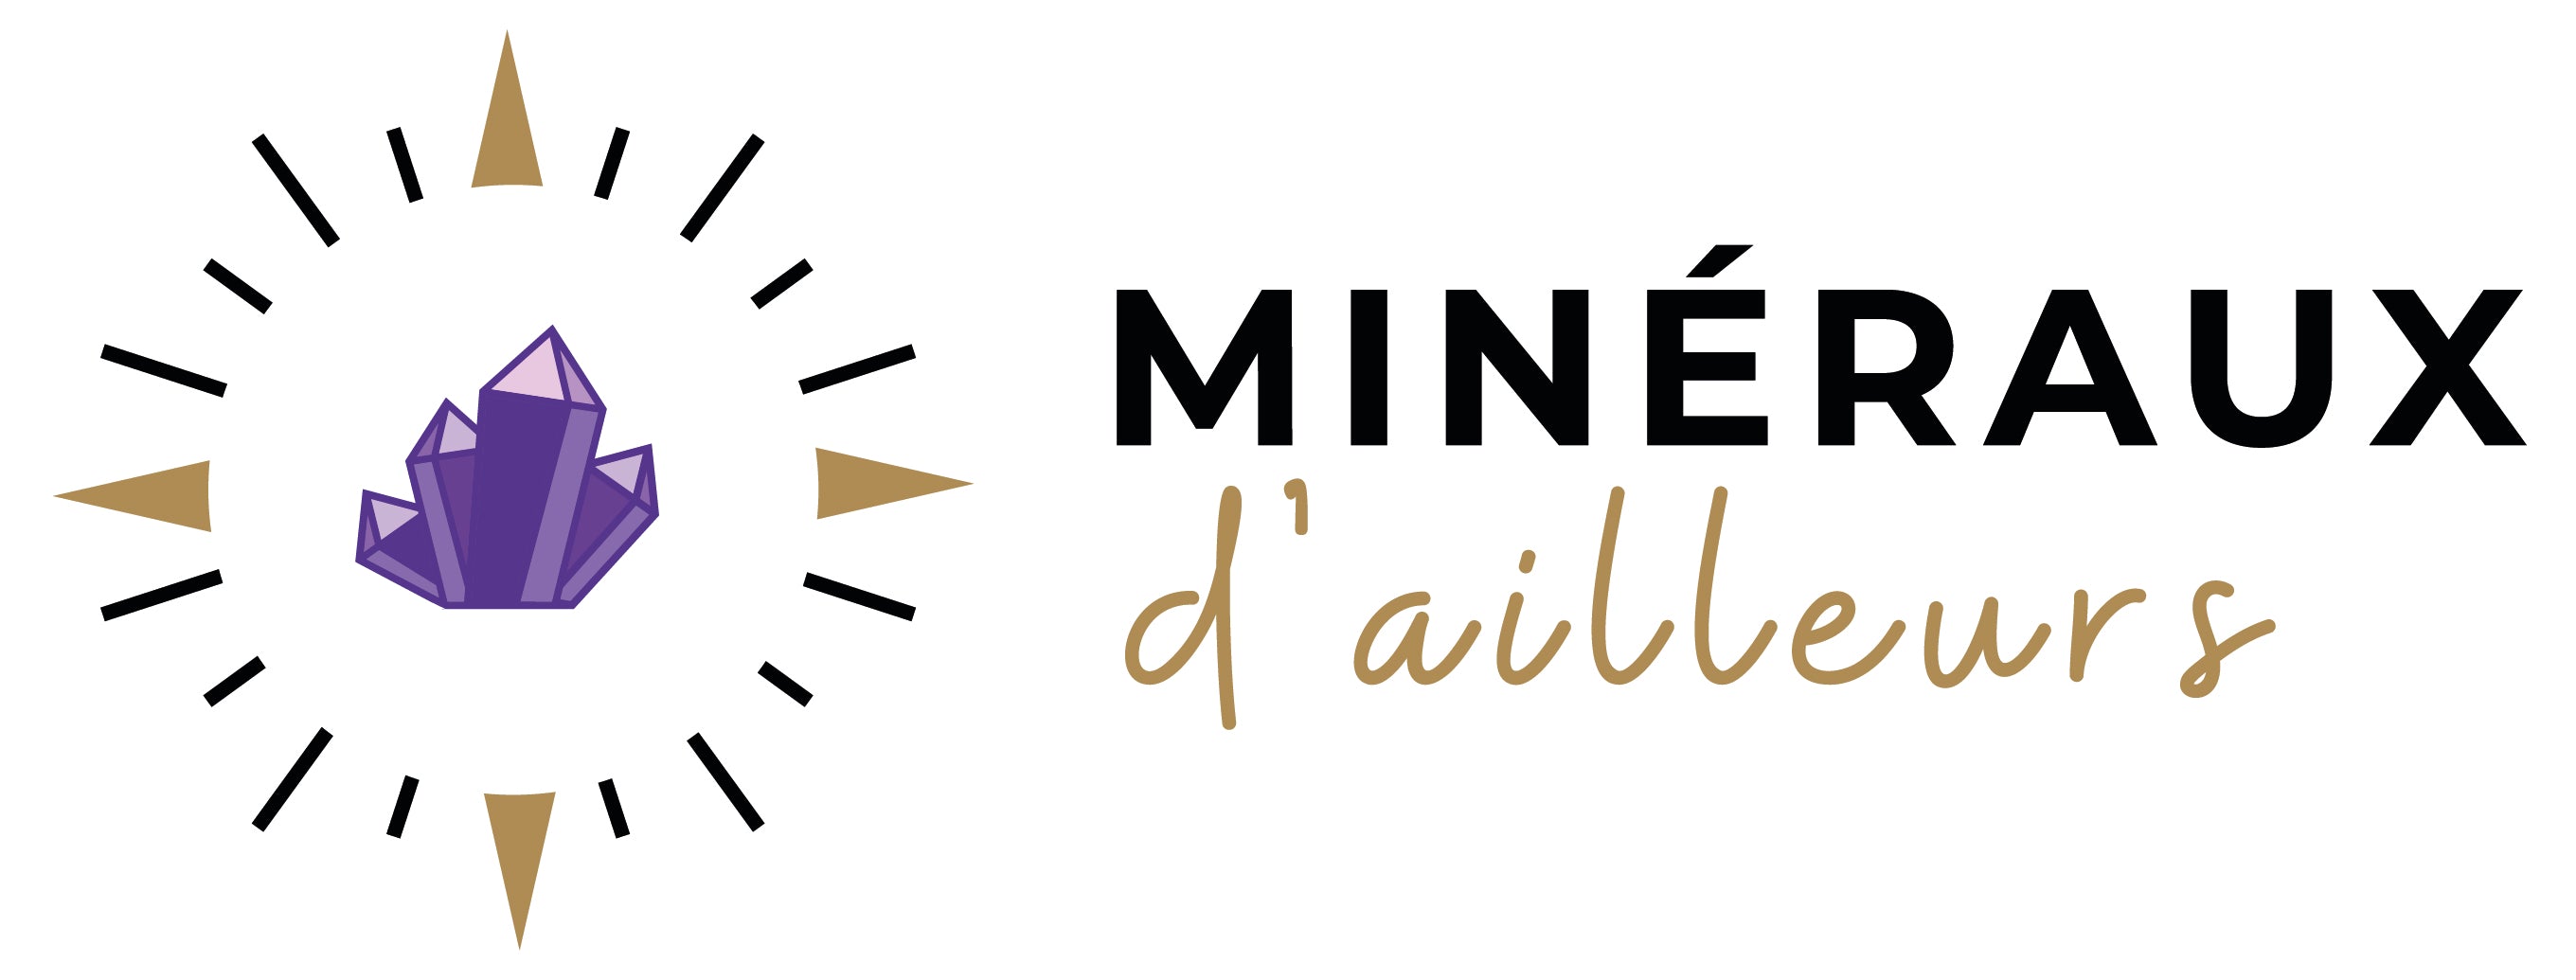 Minéraux de Collection - France Minéraux